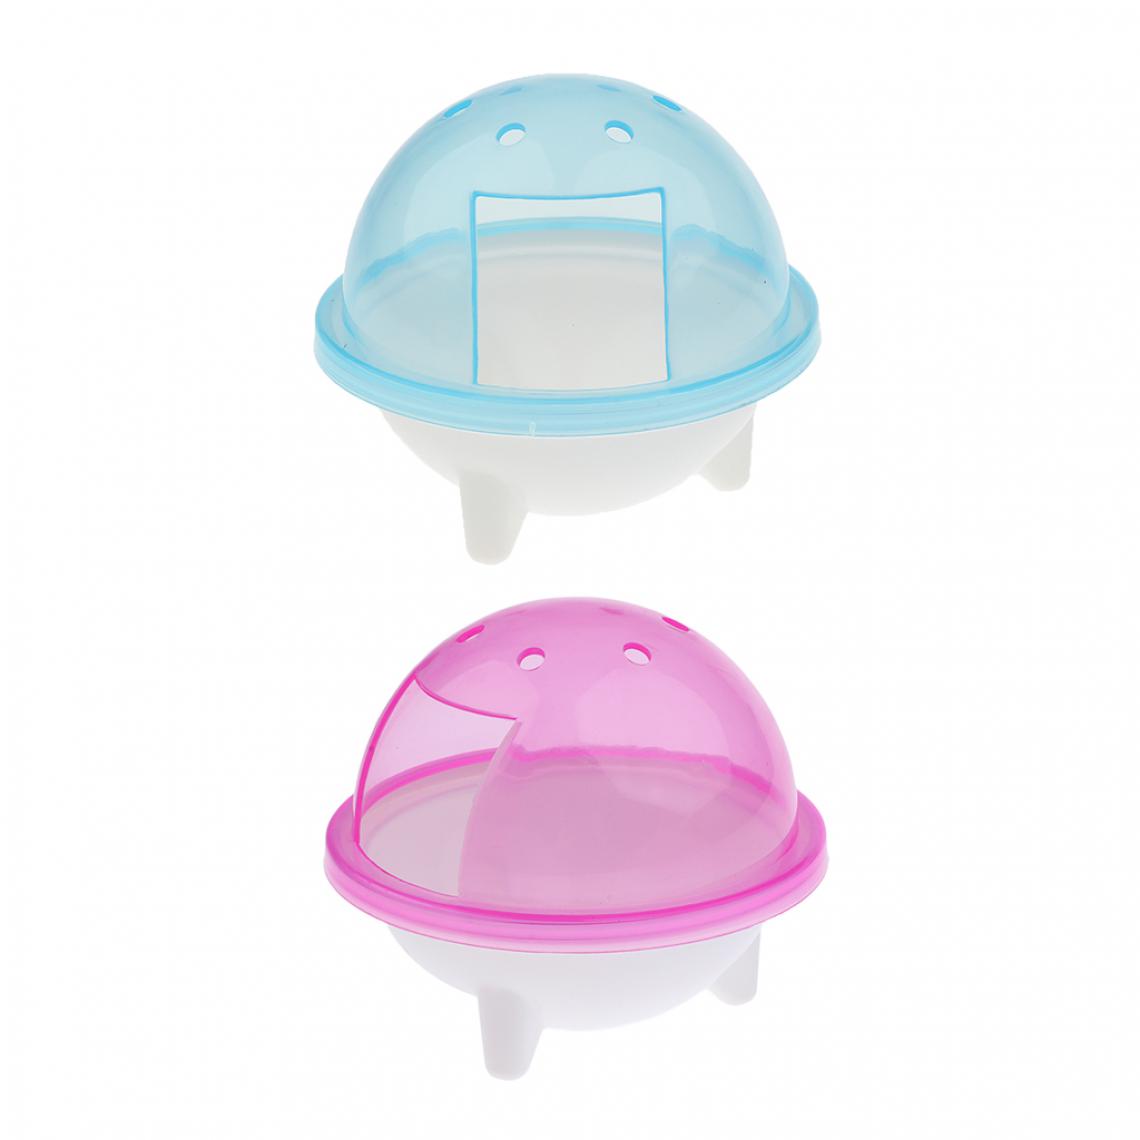 marque generique - 2 Pcs Salle de Bains Plastique Respirant Douche Boîte pour Hamster Chinchilla Lapin Petit Animal Compagnie Bleu + Rose - Kits créatifs